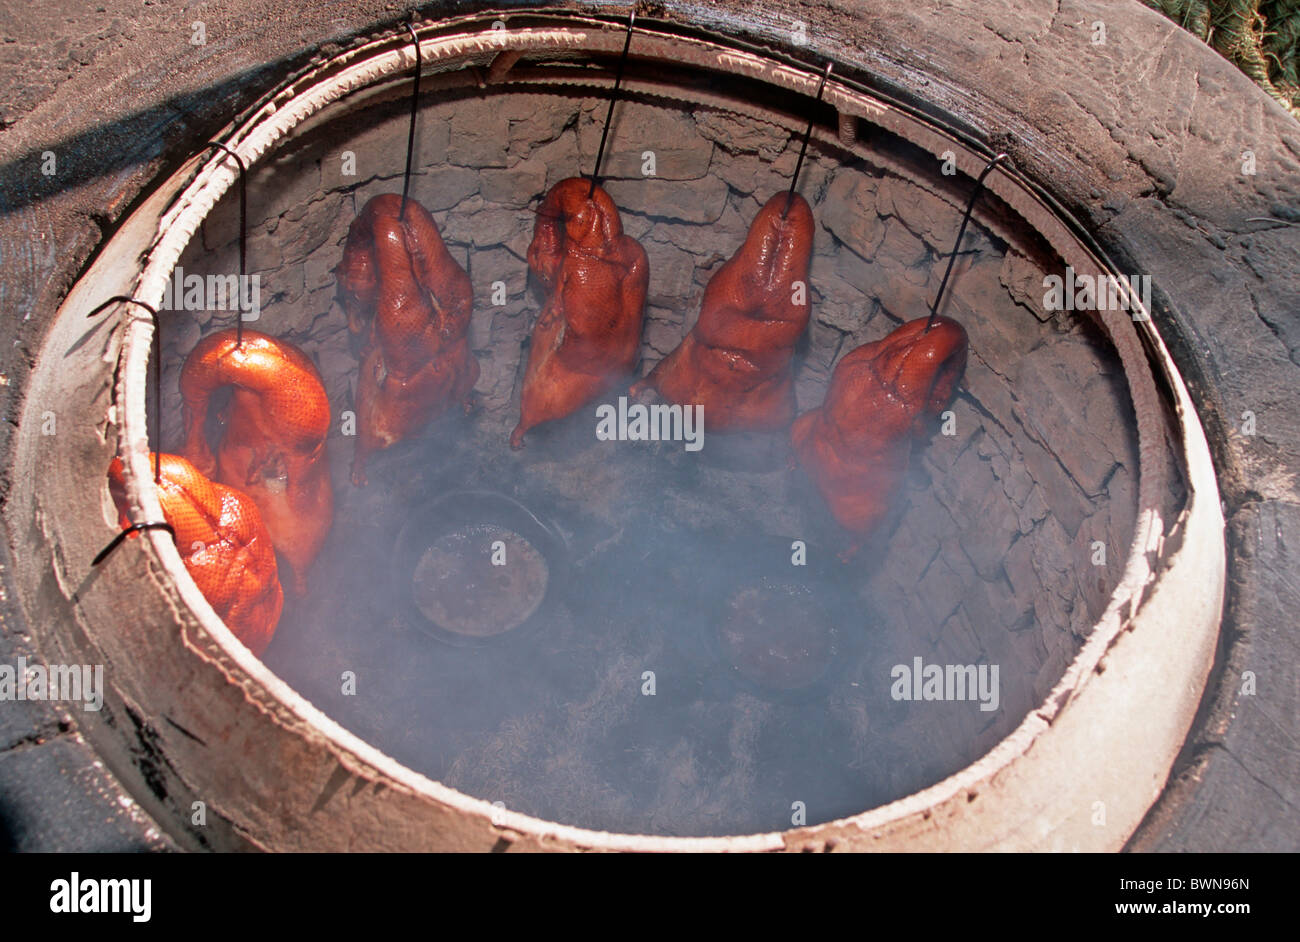 Asie Chine Yunnan Province Pékin canard canards le rôtissage, la cuisson traditionnelle four cuisinière Asie fumée Banque D'Images